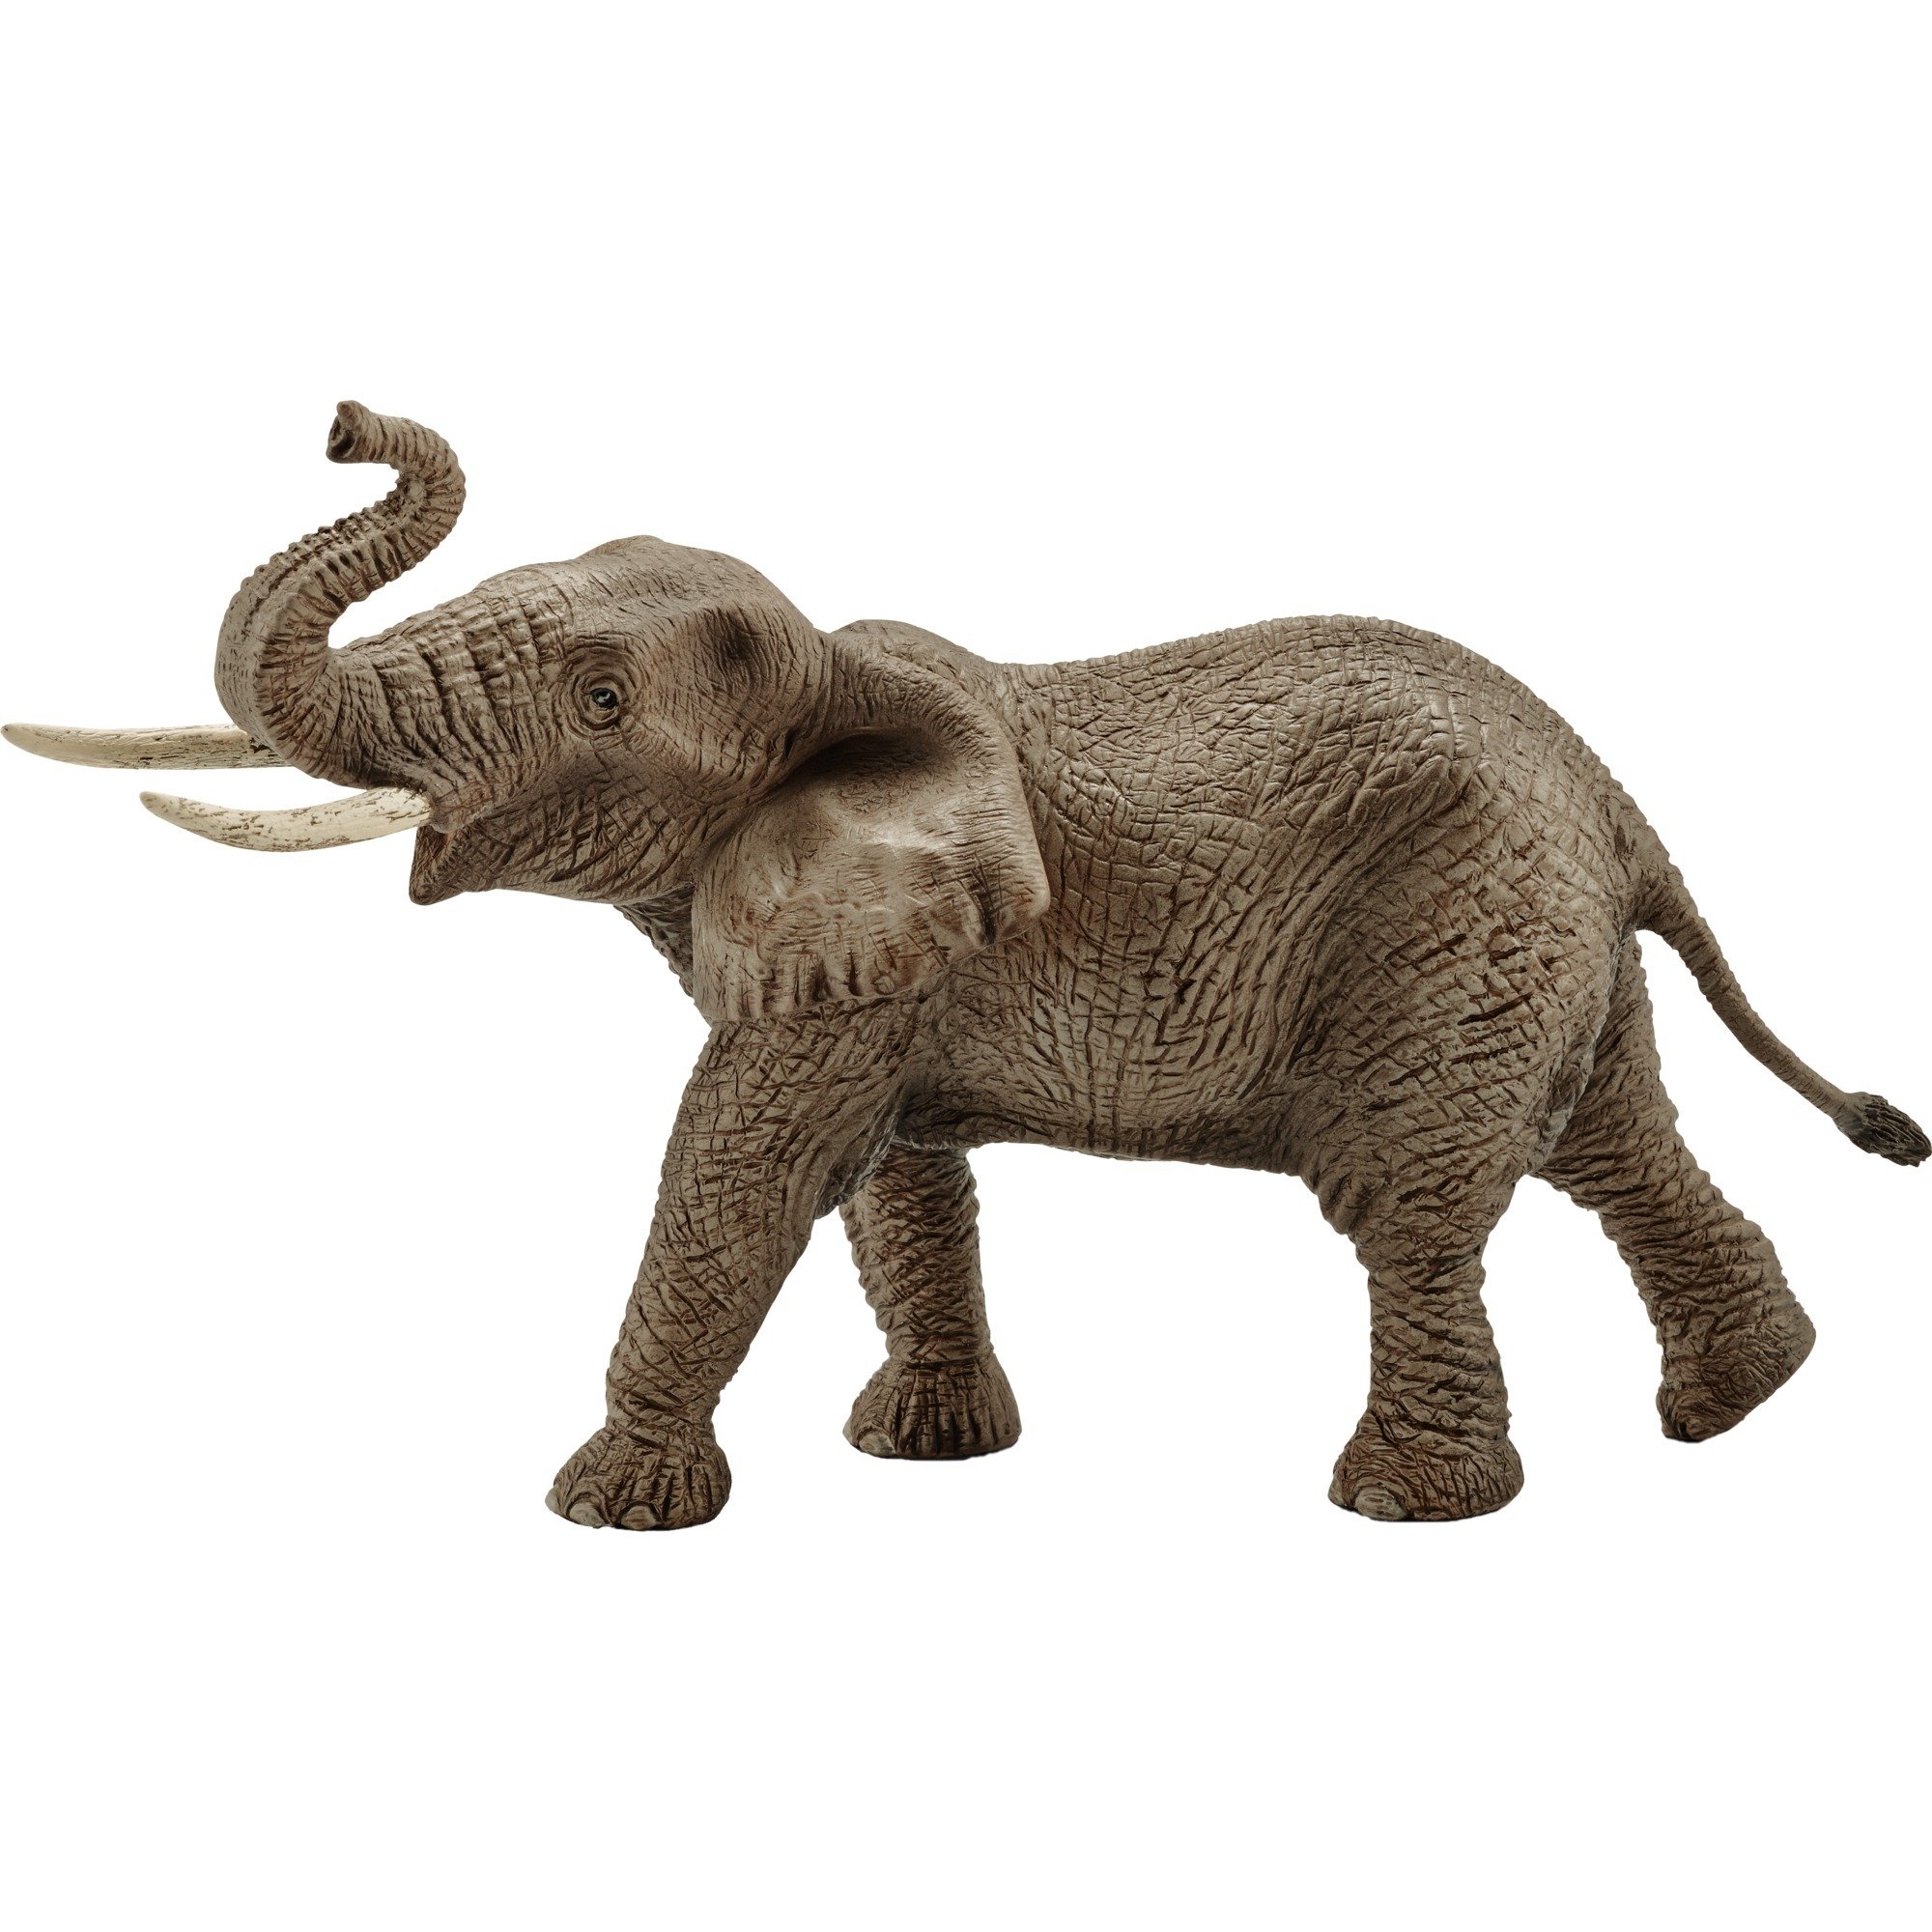 Image of Alternate - Afrikanischer Elefantenbulle, Spielfigur online einkaufen bei Alternate